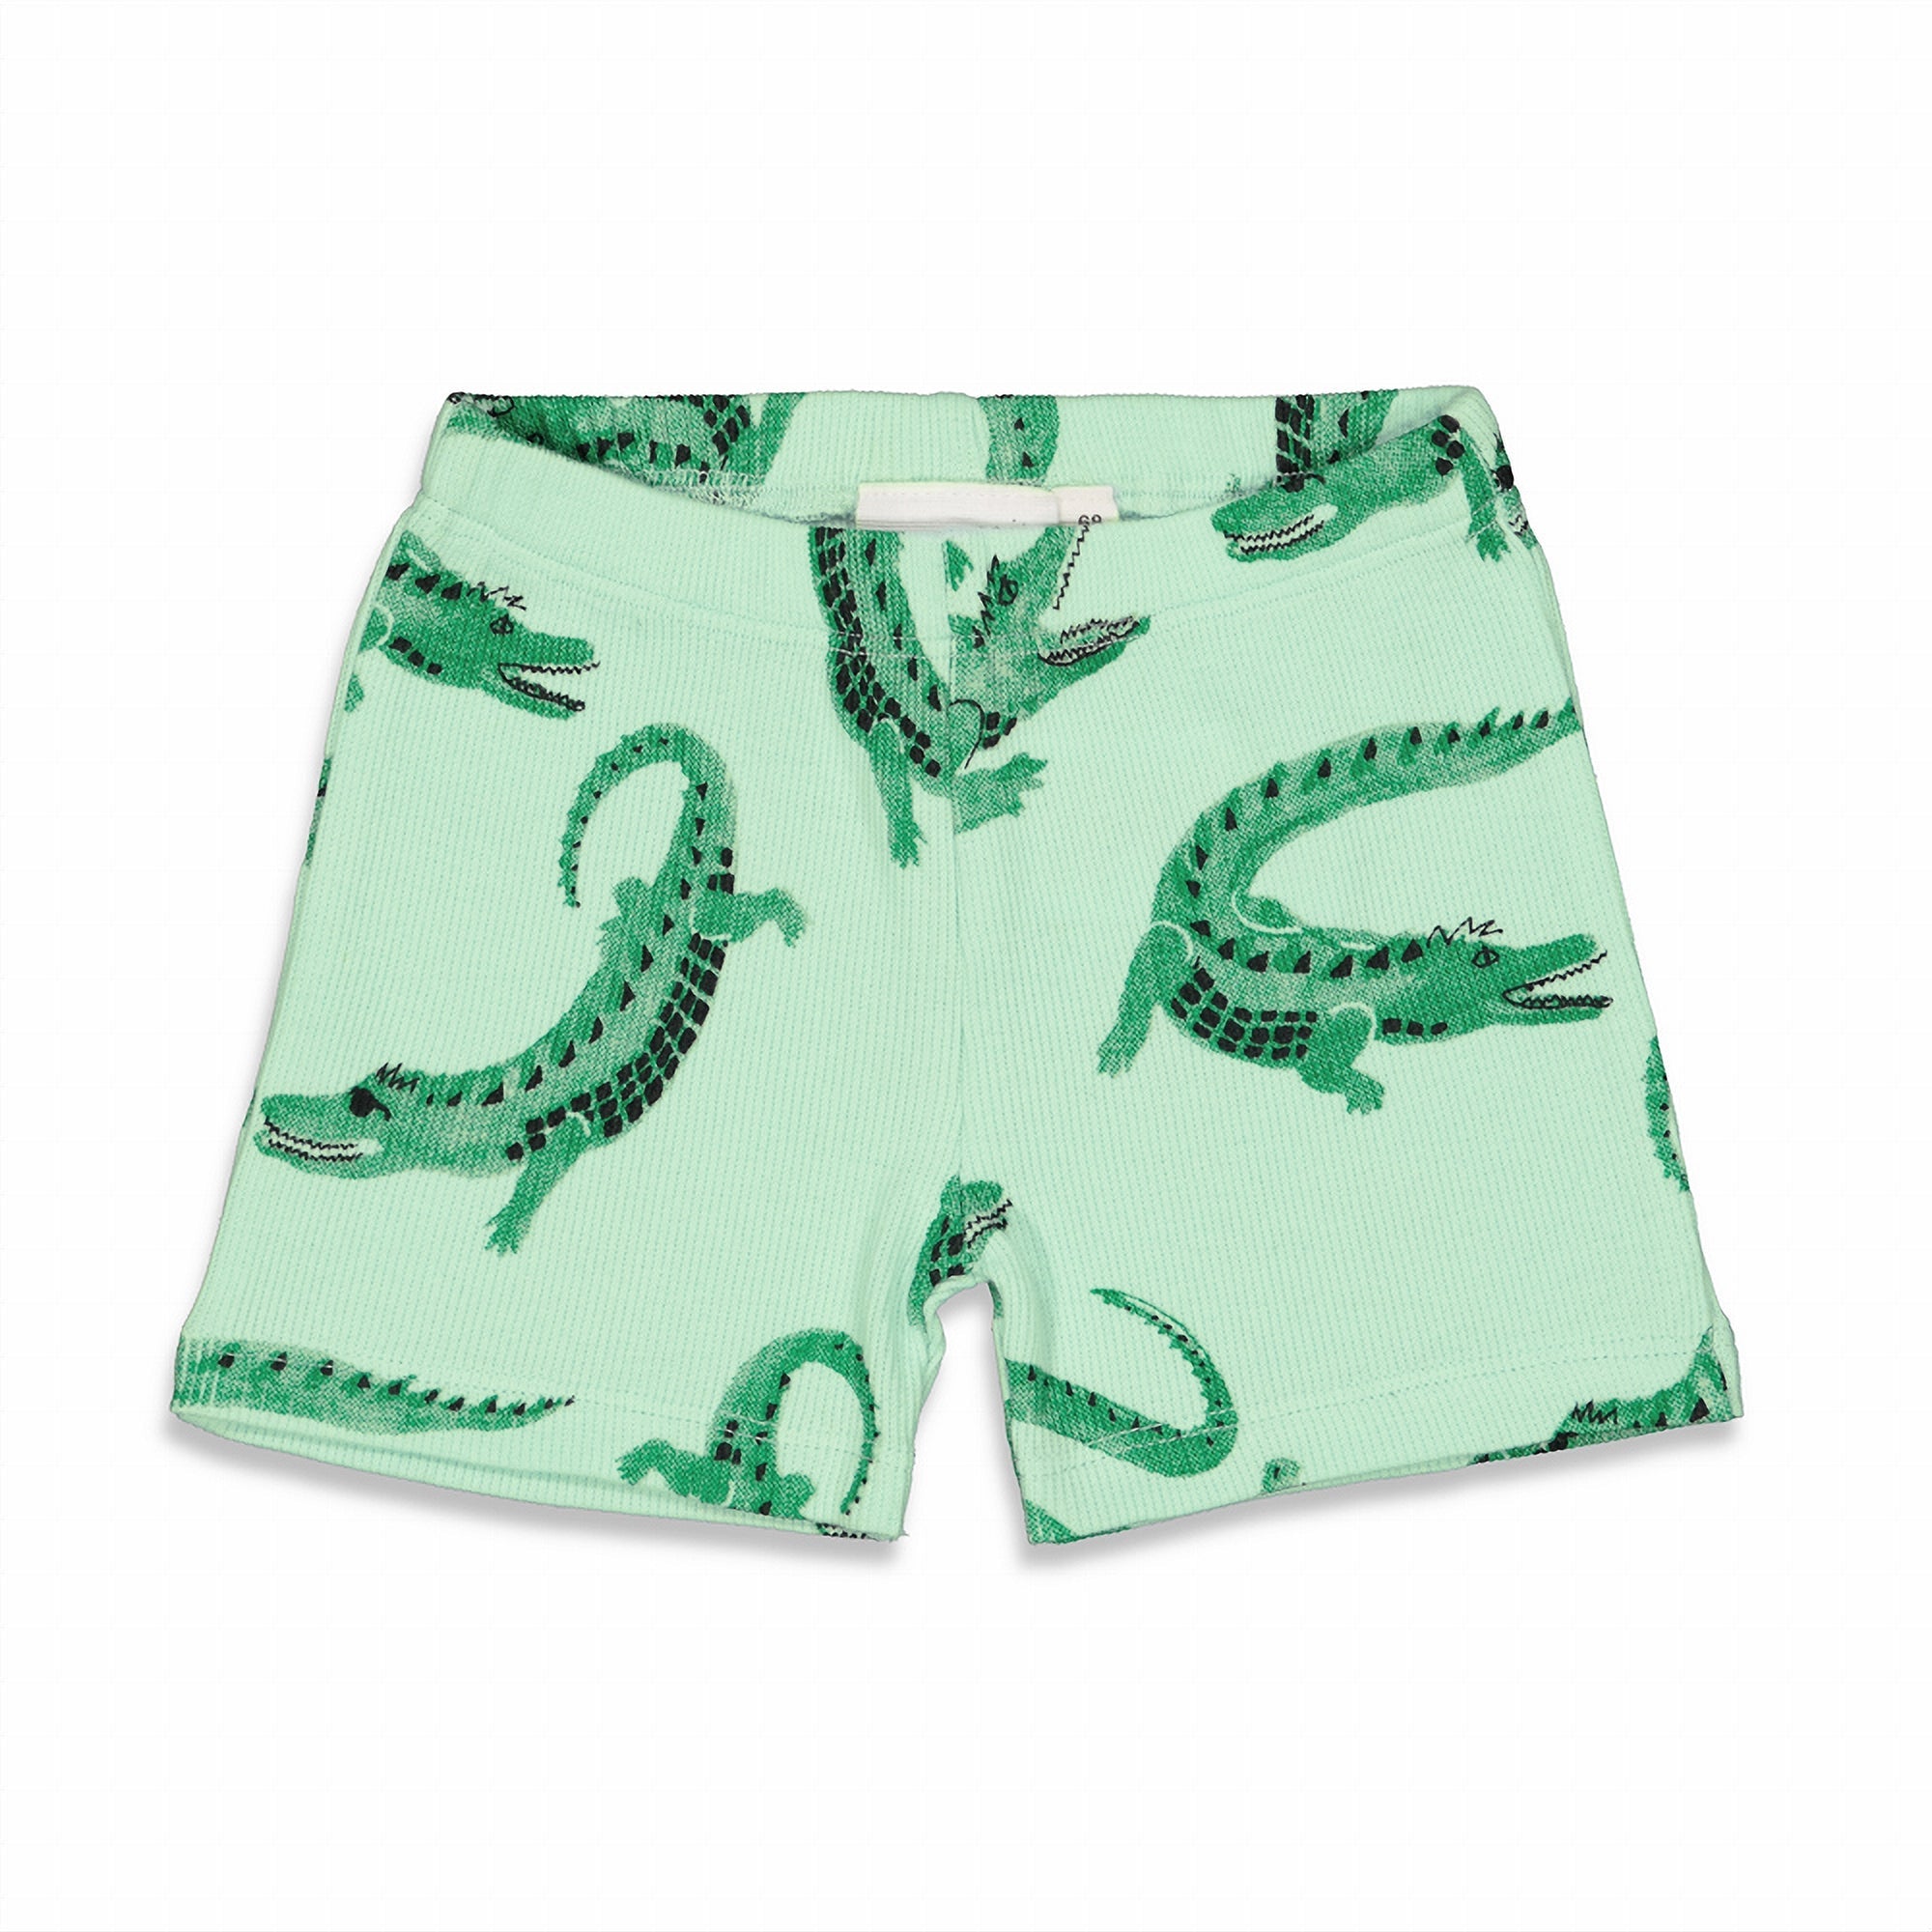 Jongens Chris Croc - Premium Summerwear by FEETJE van Feetje in de kleur Groen in maat 152.